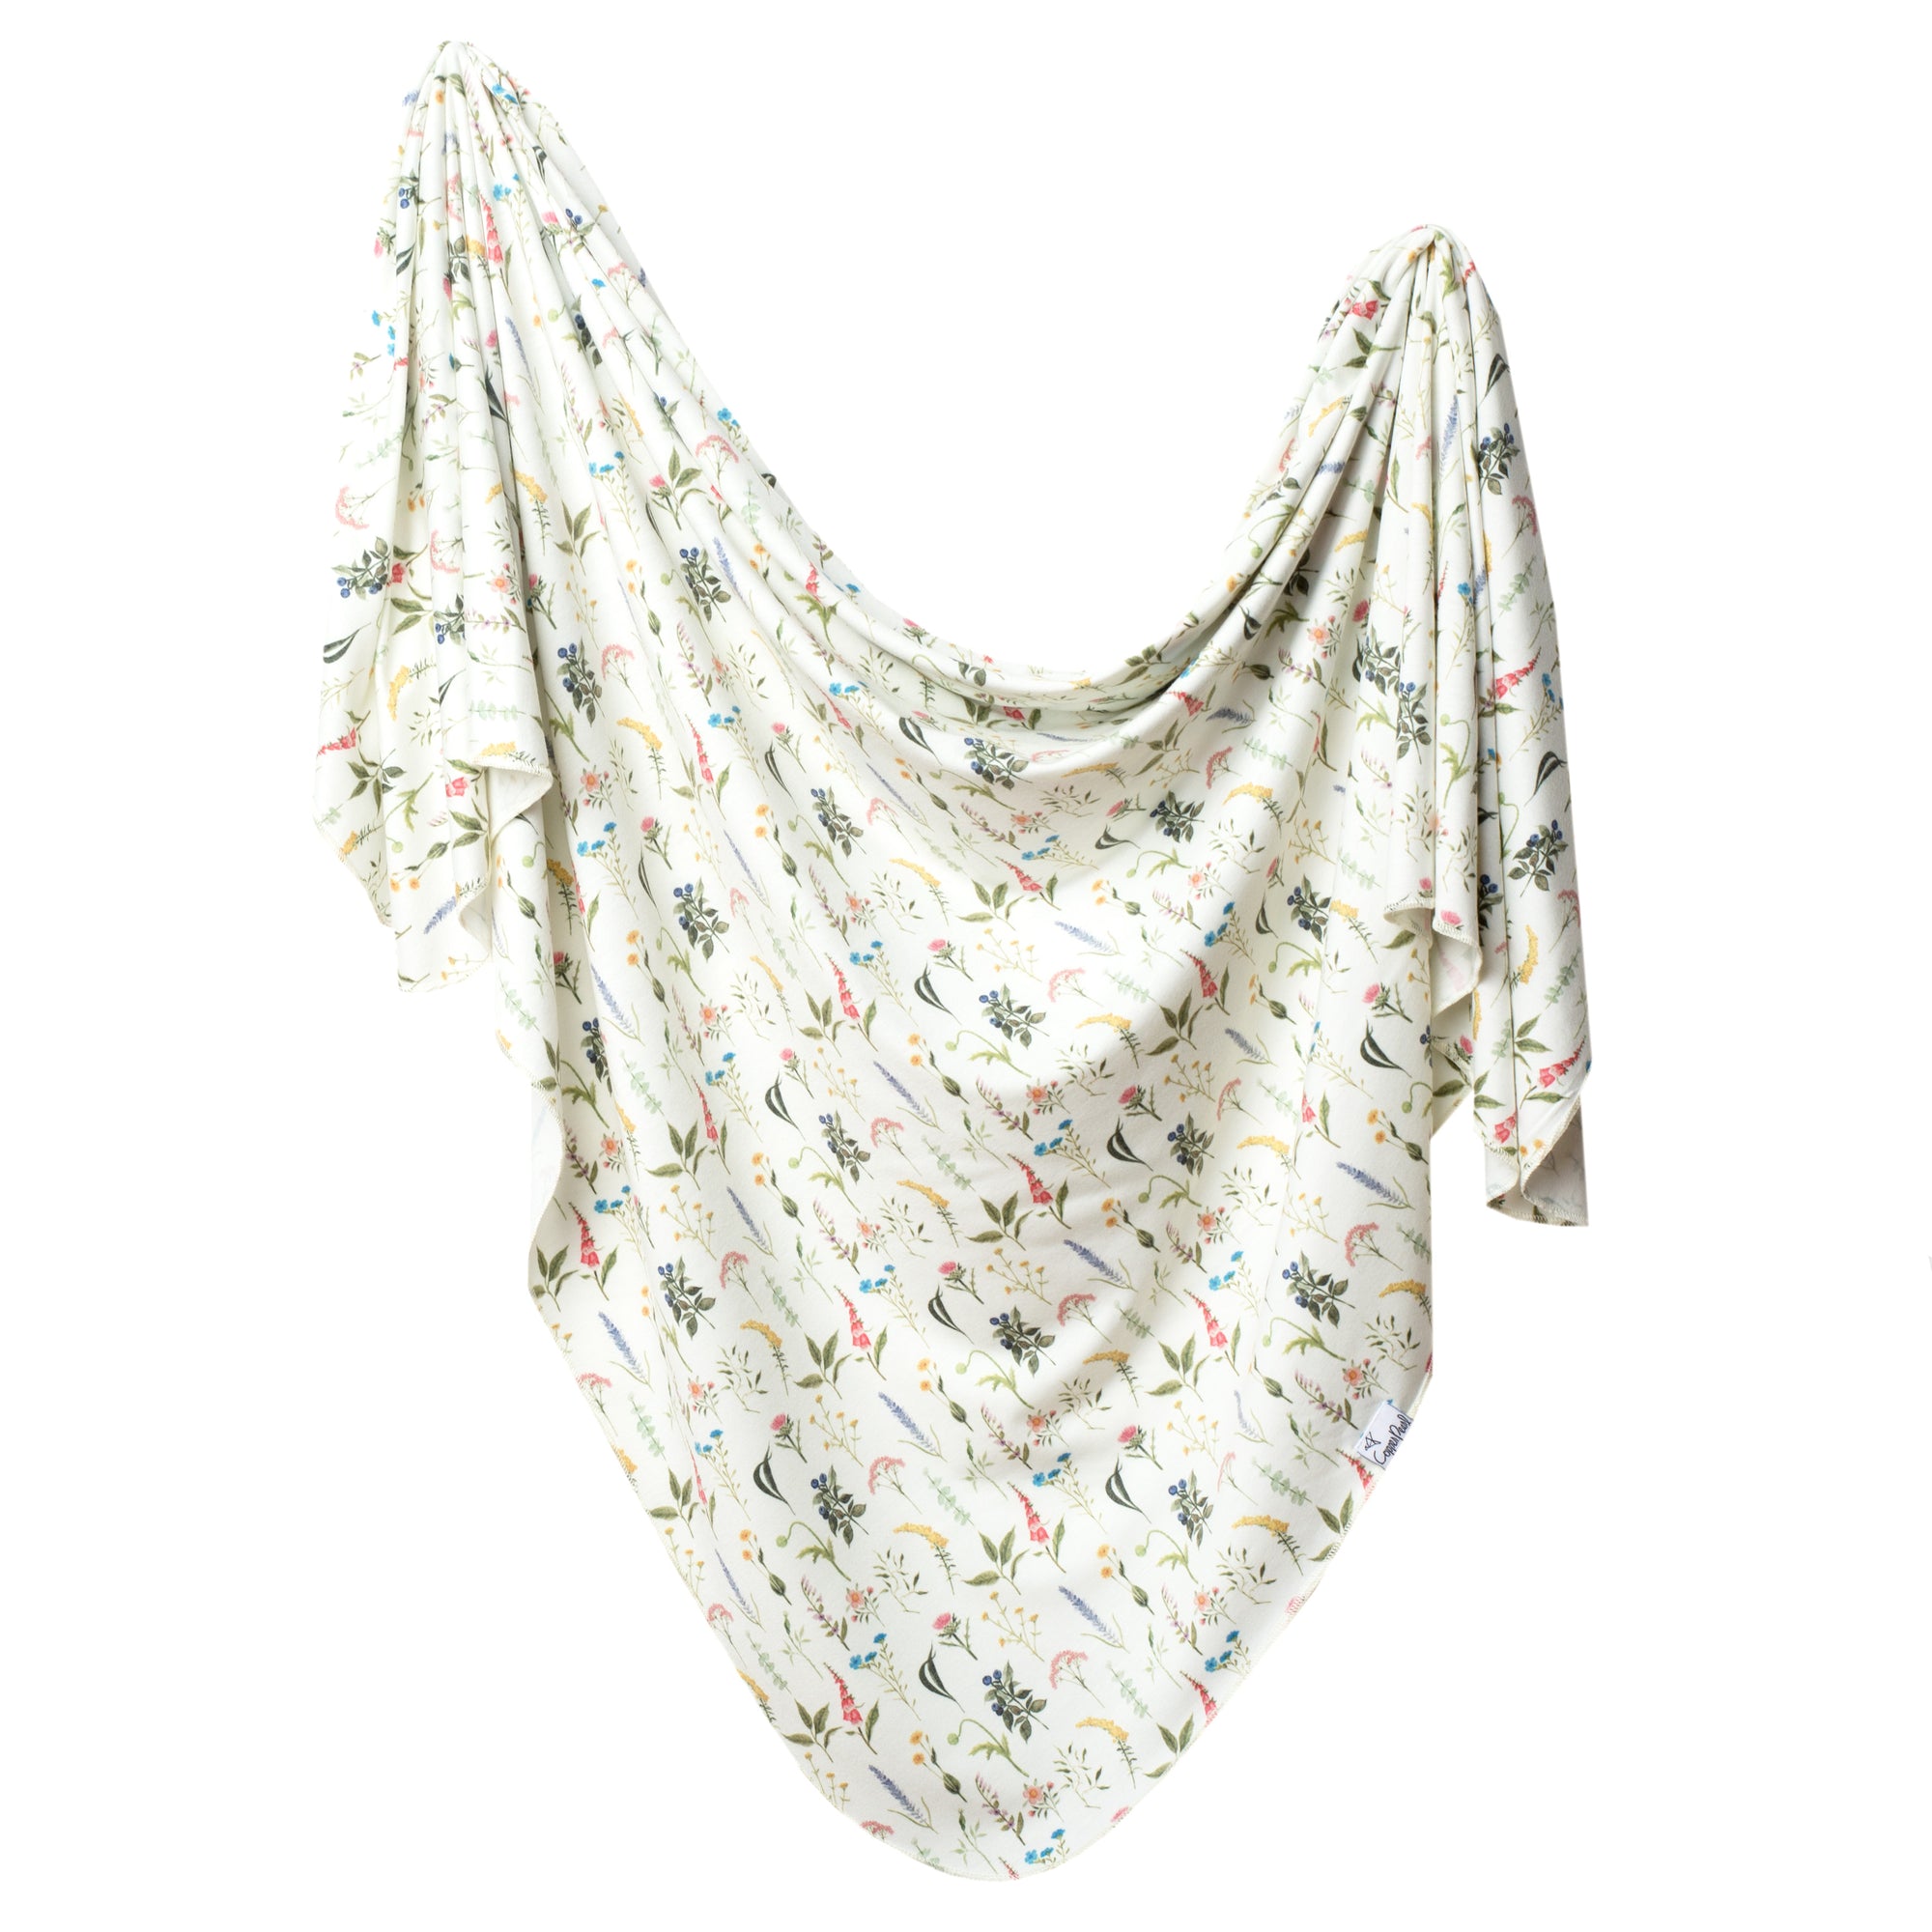 Knit Swaddle Blanket - Aspen